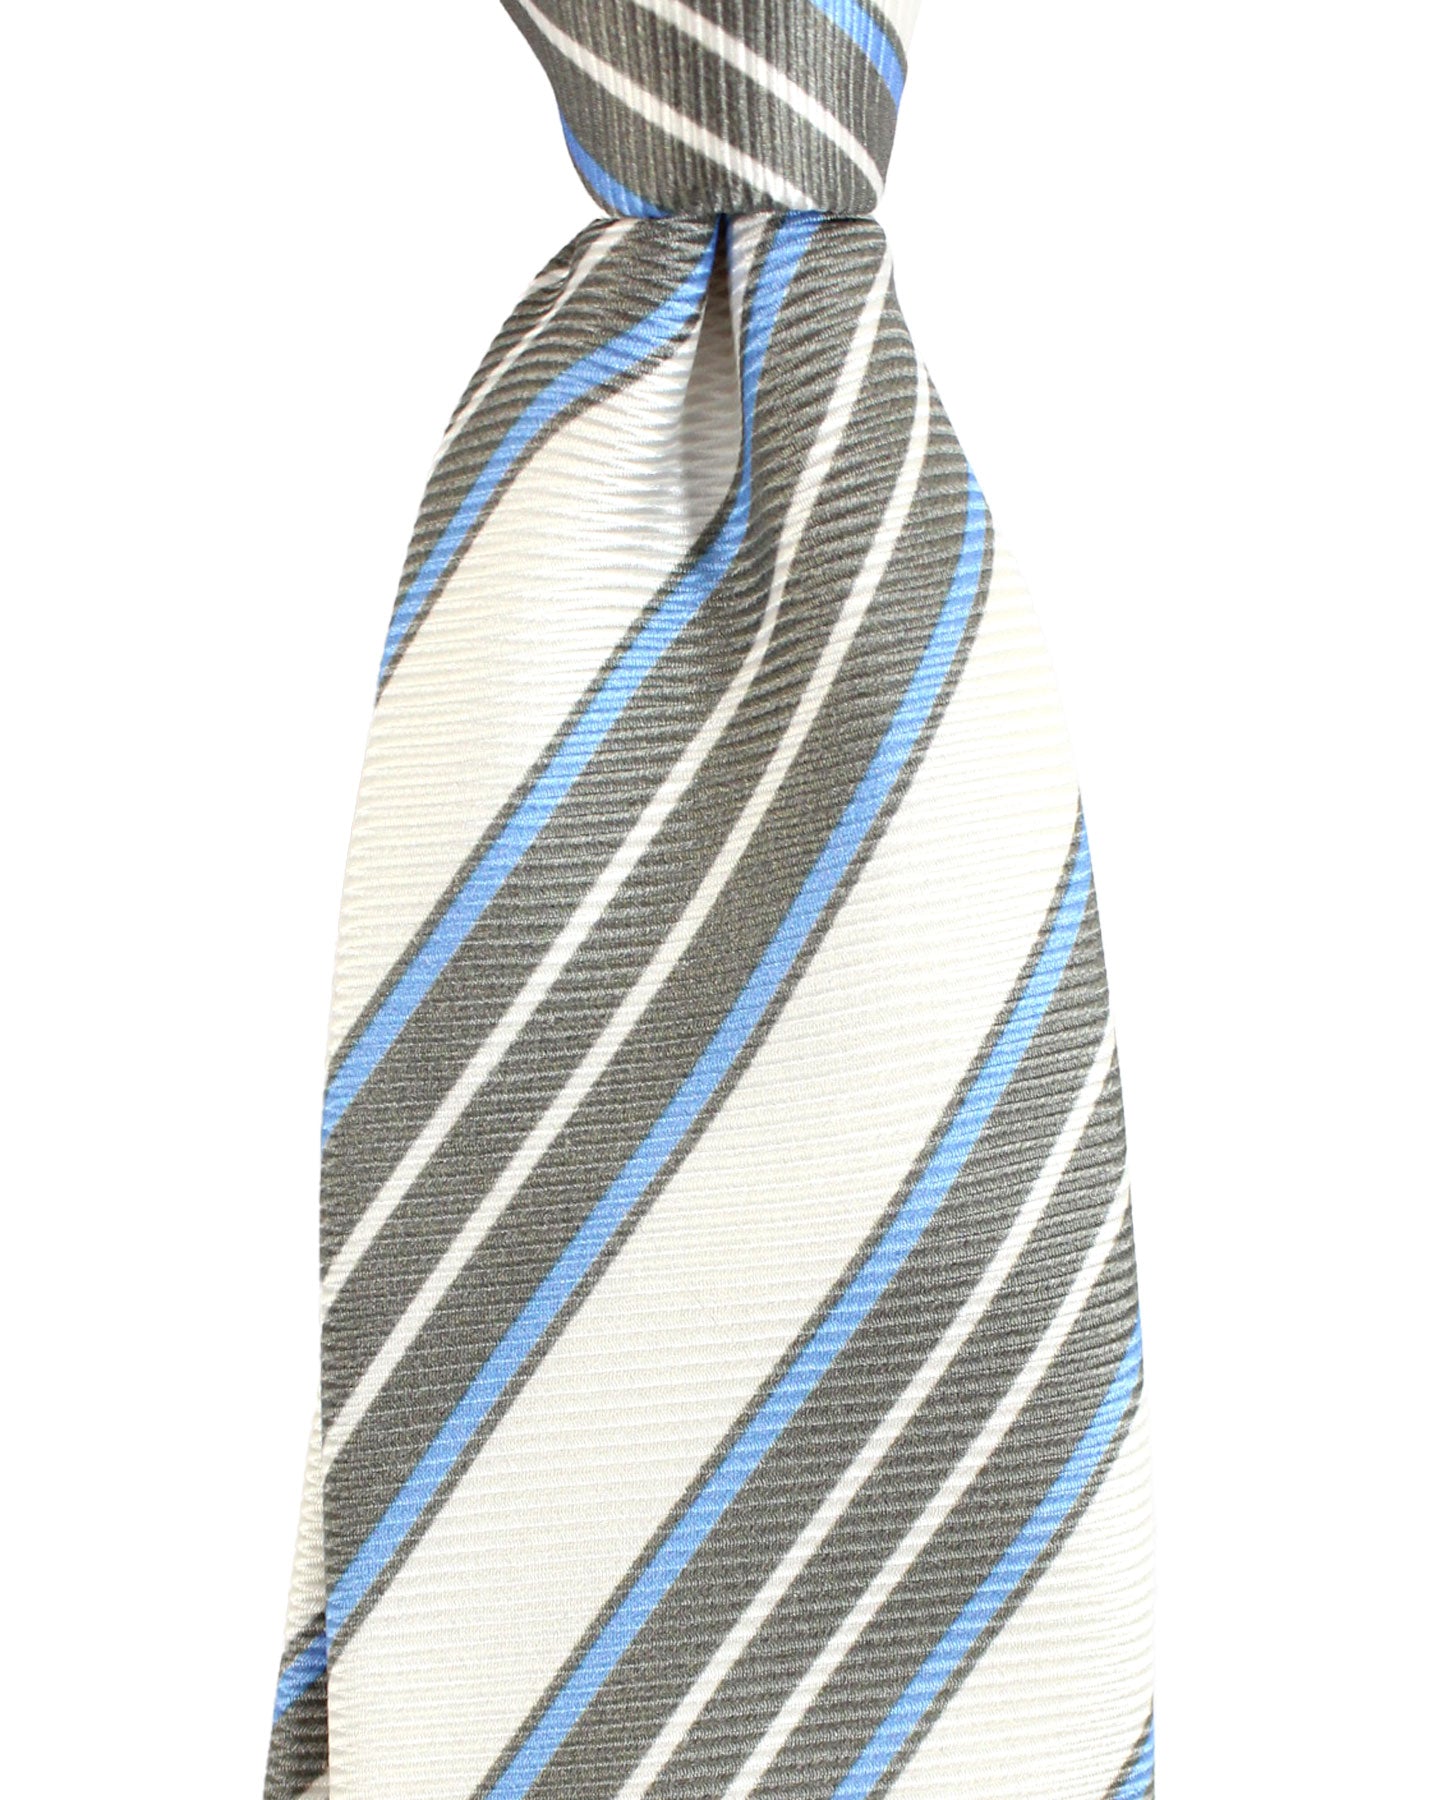 Kiton Tie Taupe Silver Periwinkle Stripes Design - Sevenfold Necktie